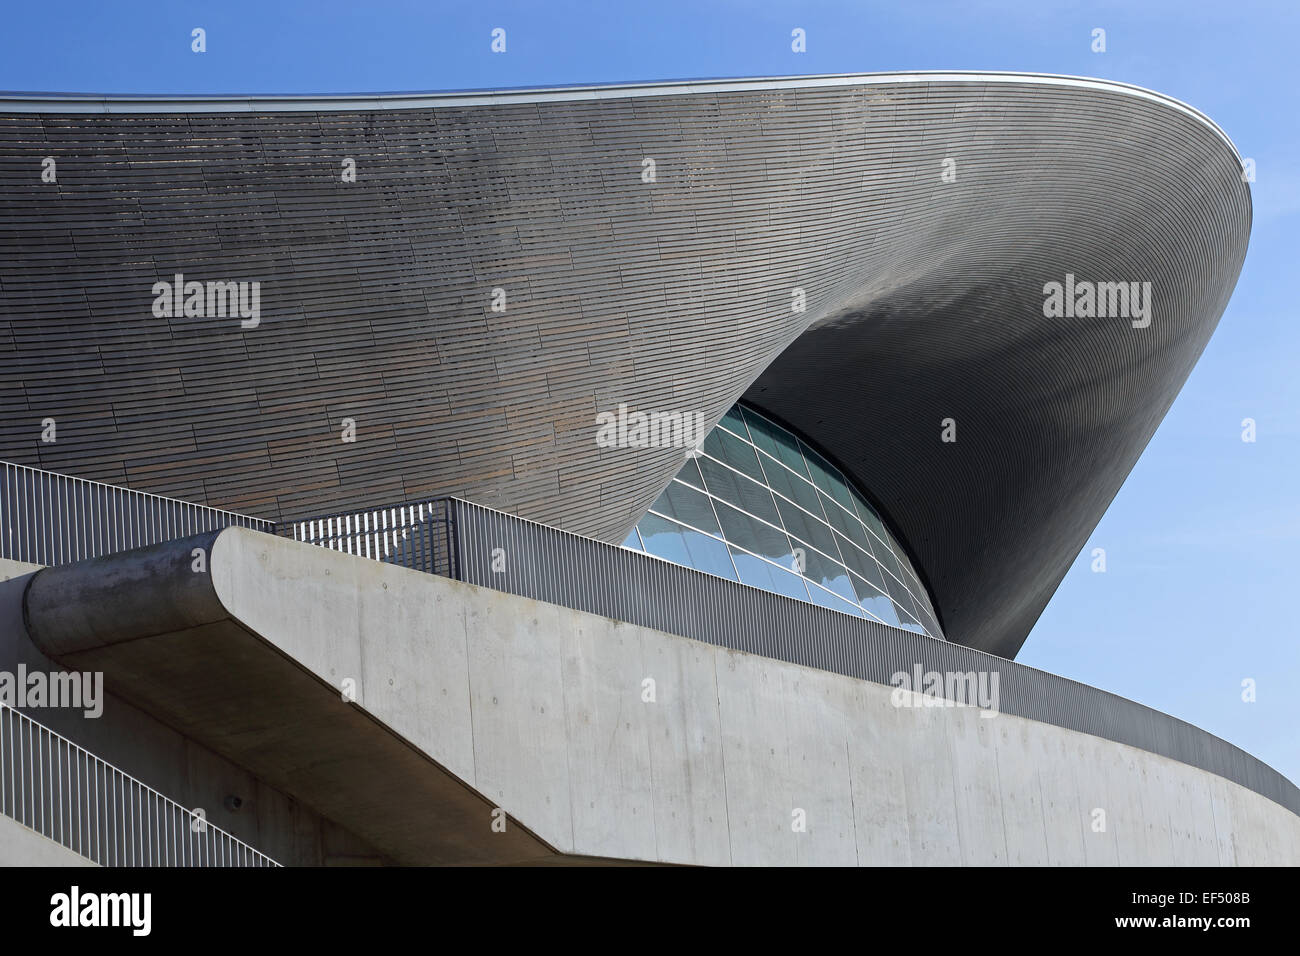 London Olympic Aquatic Centre, entworfen von Zaha Hadid zeigt Dachkonstruktion und Verglasung. Temporäre Sitzplätze Flügel entfernt. Stockfoto